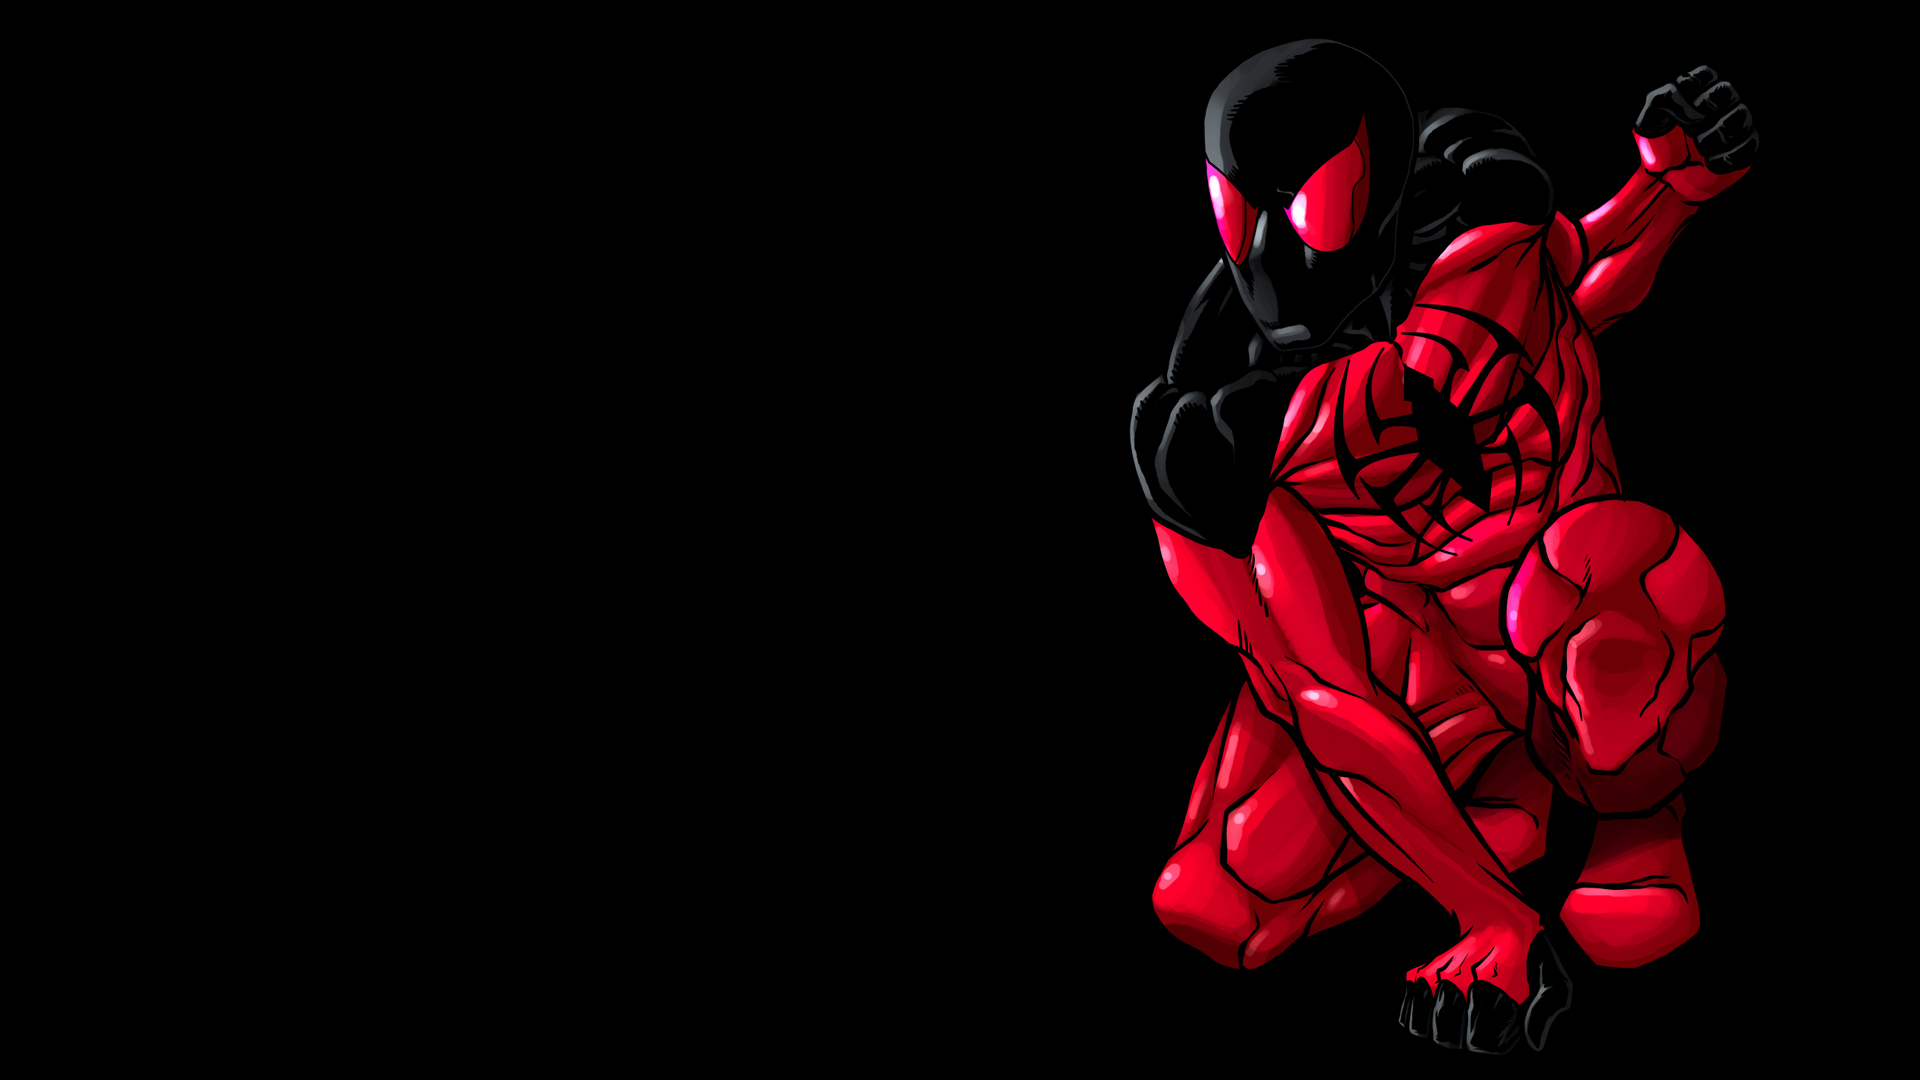 緋色のクモの壁紙,架空の人物,赤,スーパーヒーロー,スパイダーマン